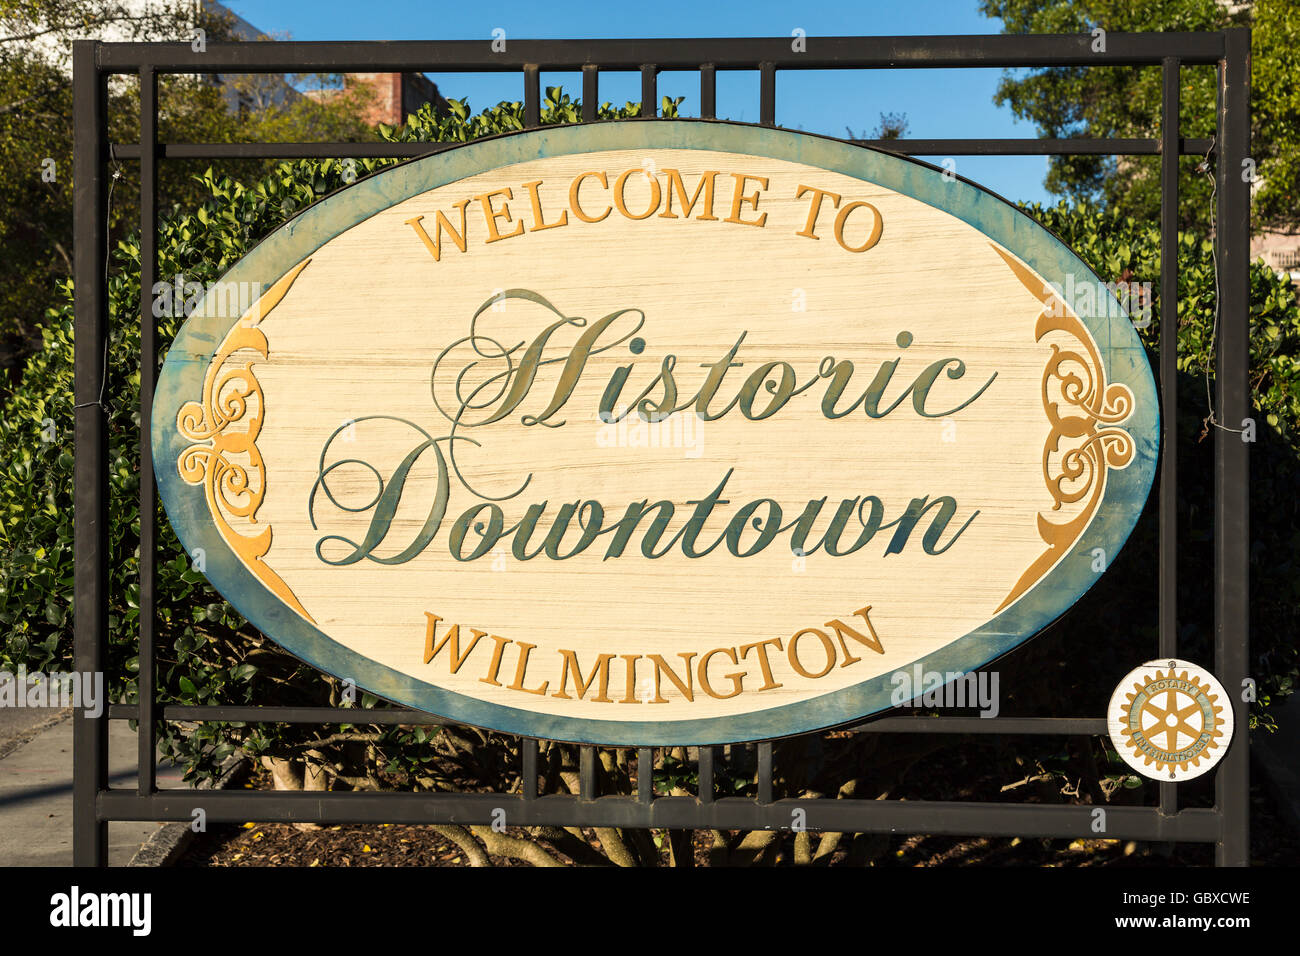 Melden Sie willkommen im historischen Stadtzentrum von Wilmington, NC, USA Stockfoto